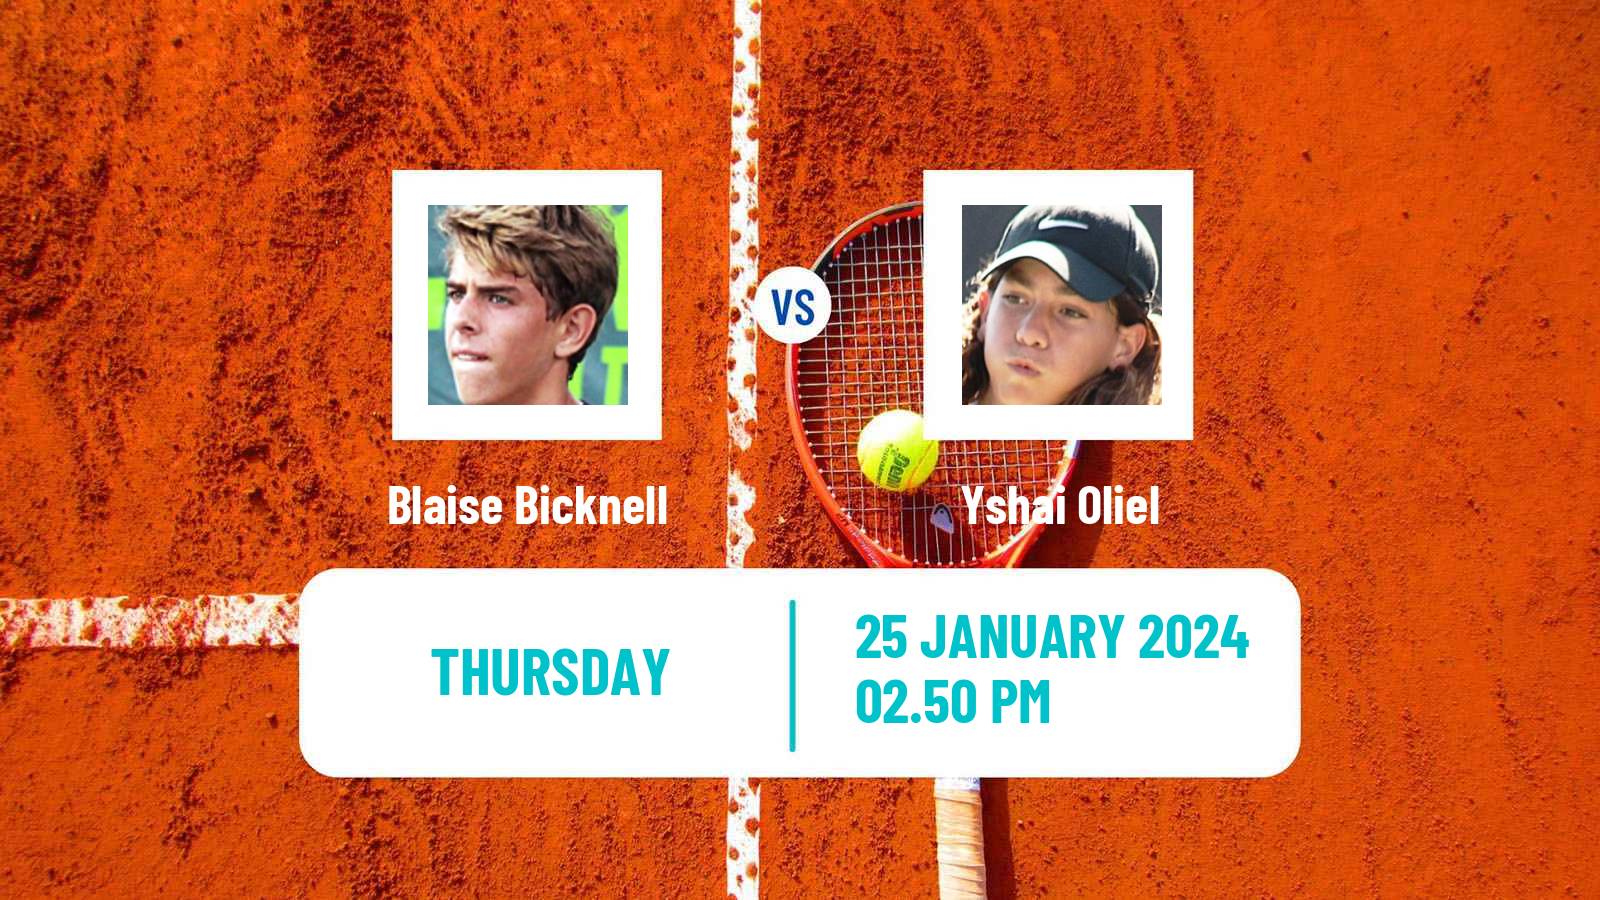 Tennis Indian Wells 2 Challenger Men Blaise Bicknell - Yshai Oliel